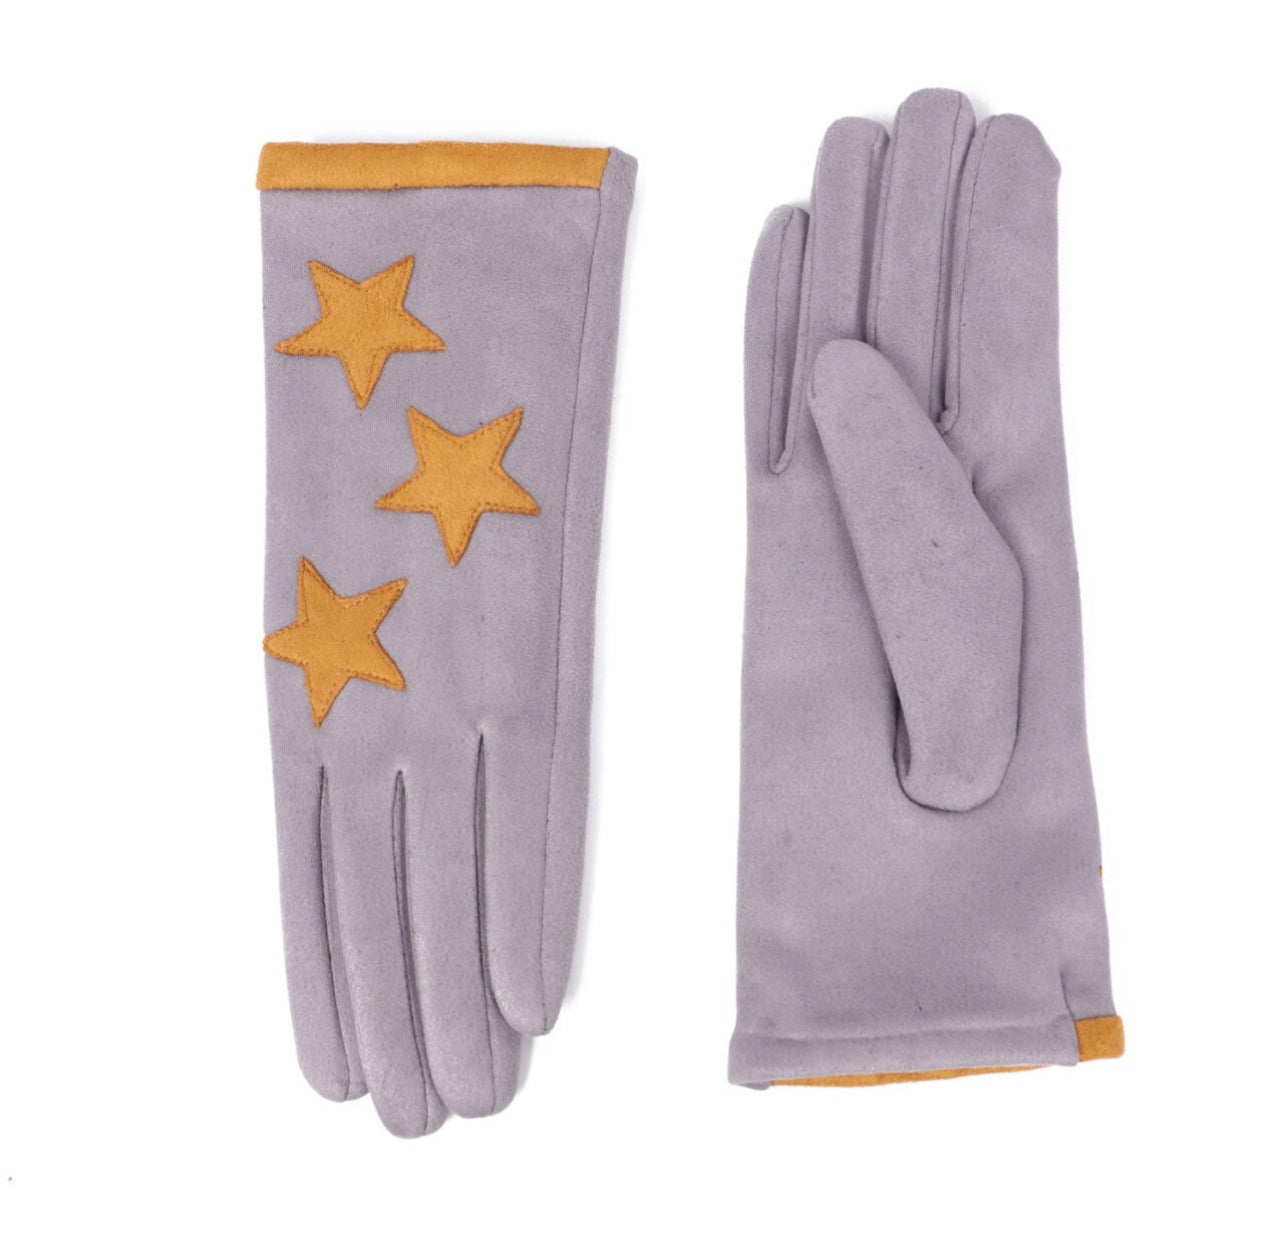 **SALE** Star Gloves